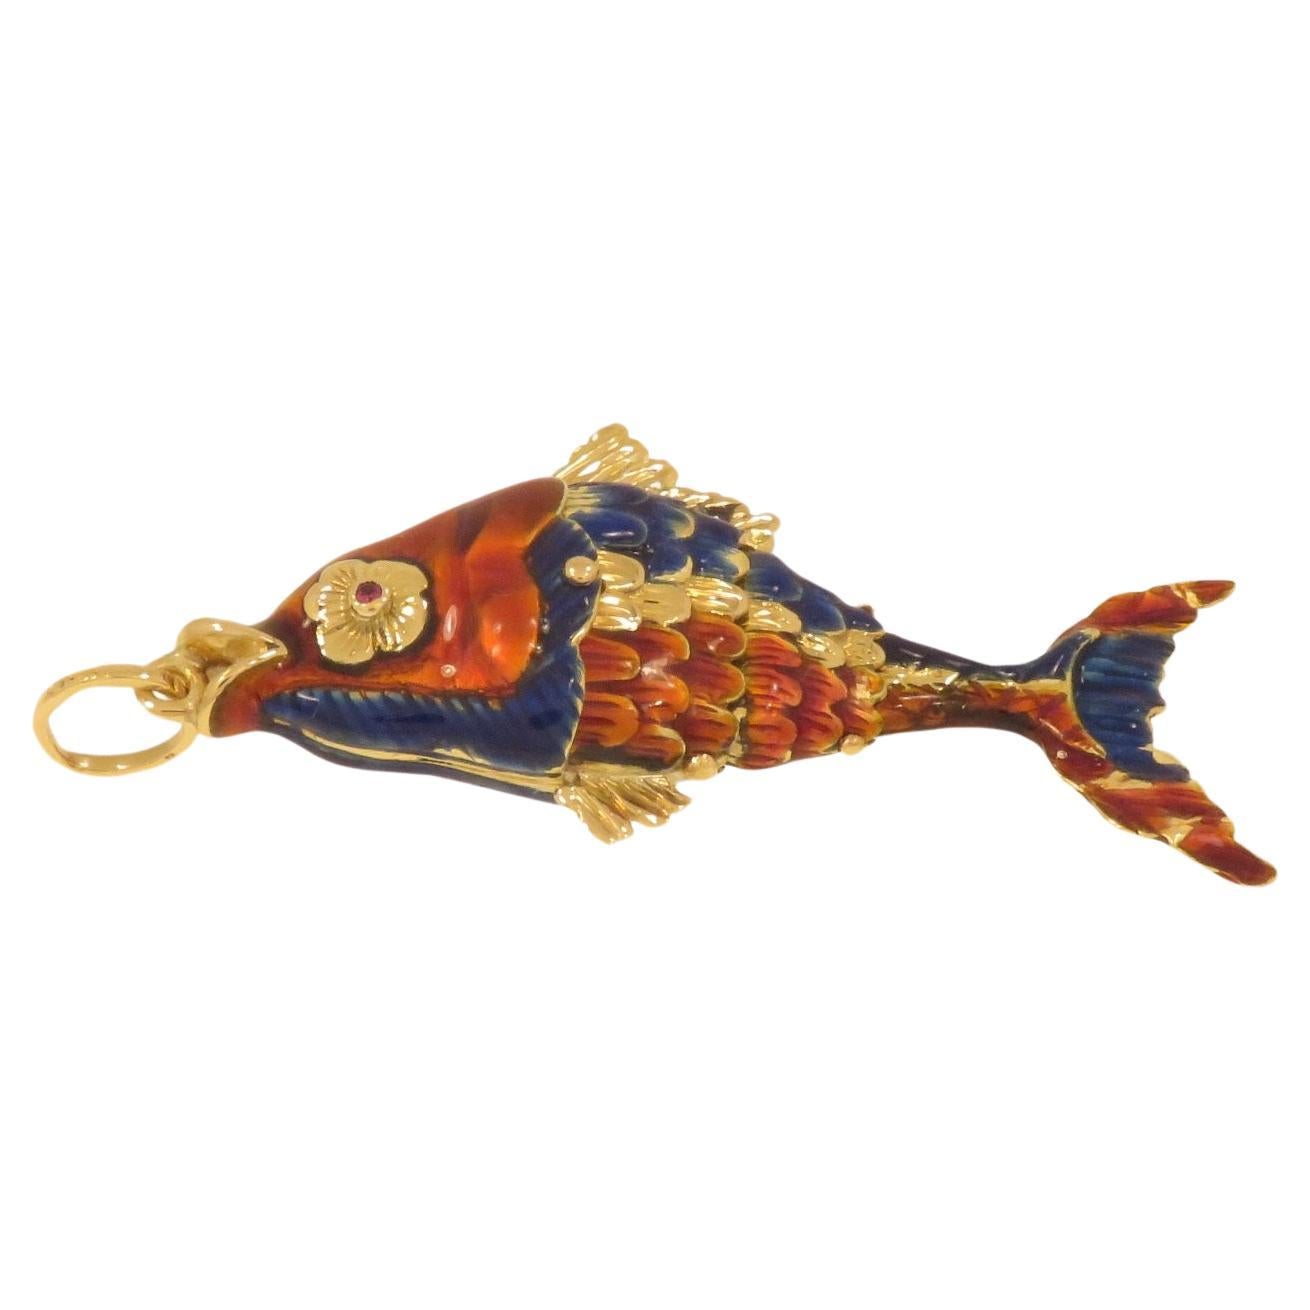 Affascinante ciondolo a forma di pesce realizzato a mano in Italia tra il 1960 e 1970. Presenta un realistico pesce con corpo articolato che permette di imitare i movimenti acquatici naturali di un pesce. Il corpo è in oro giallo 18 carati con